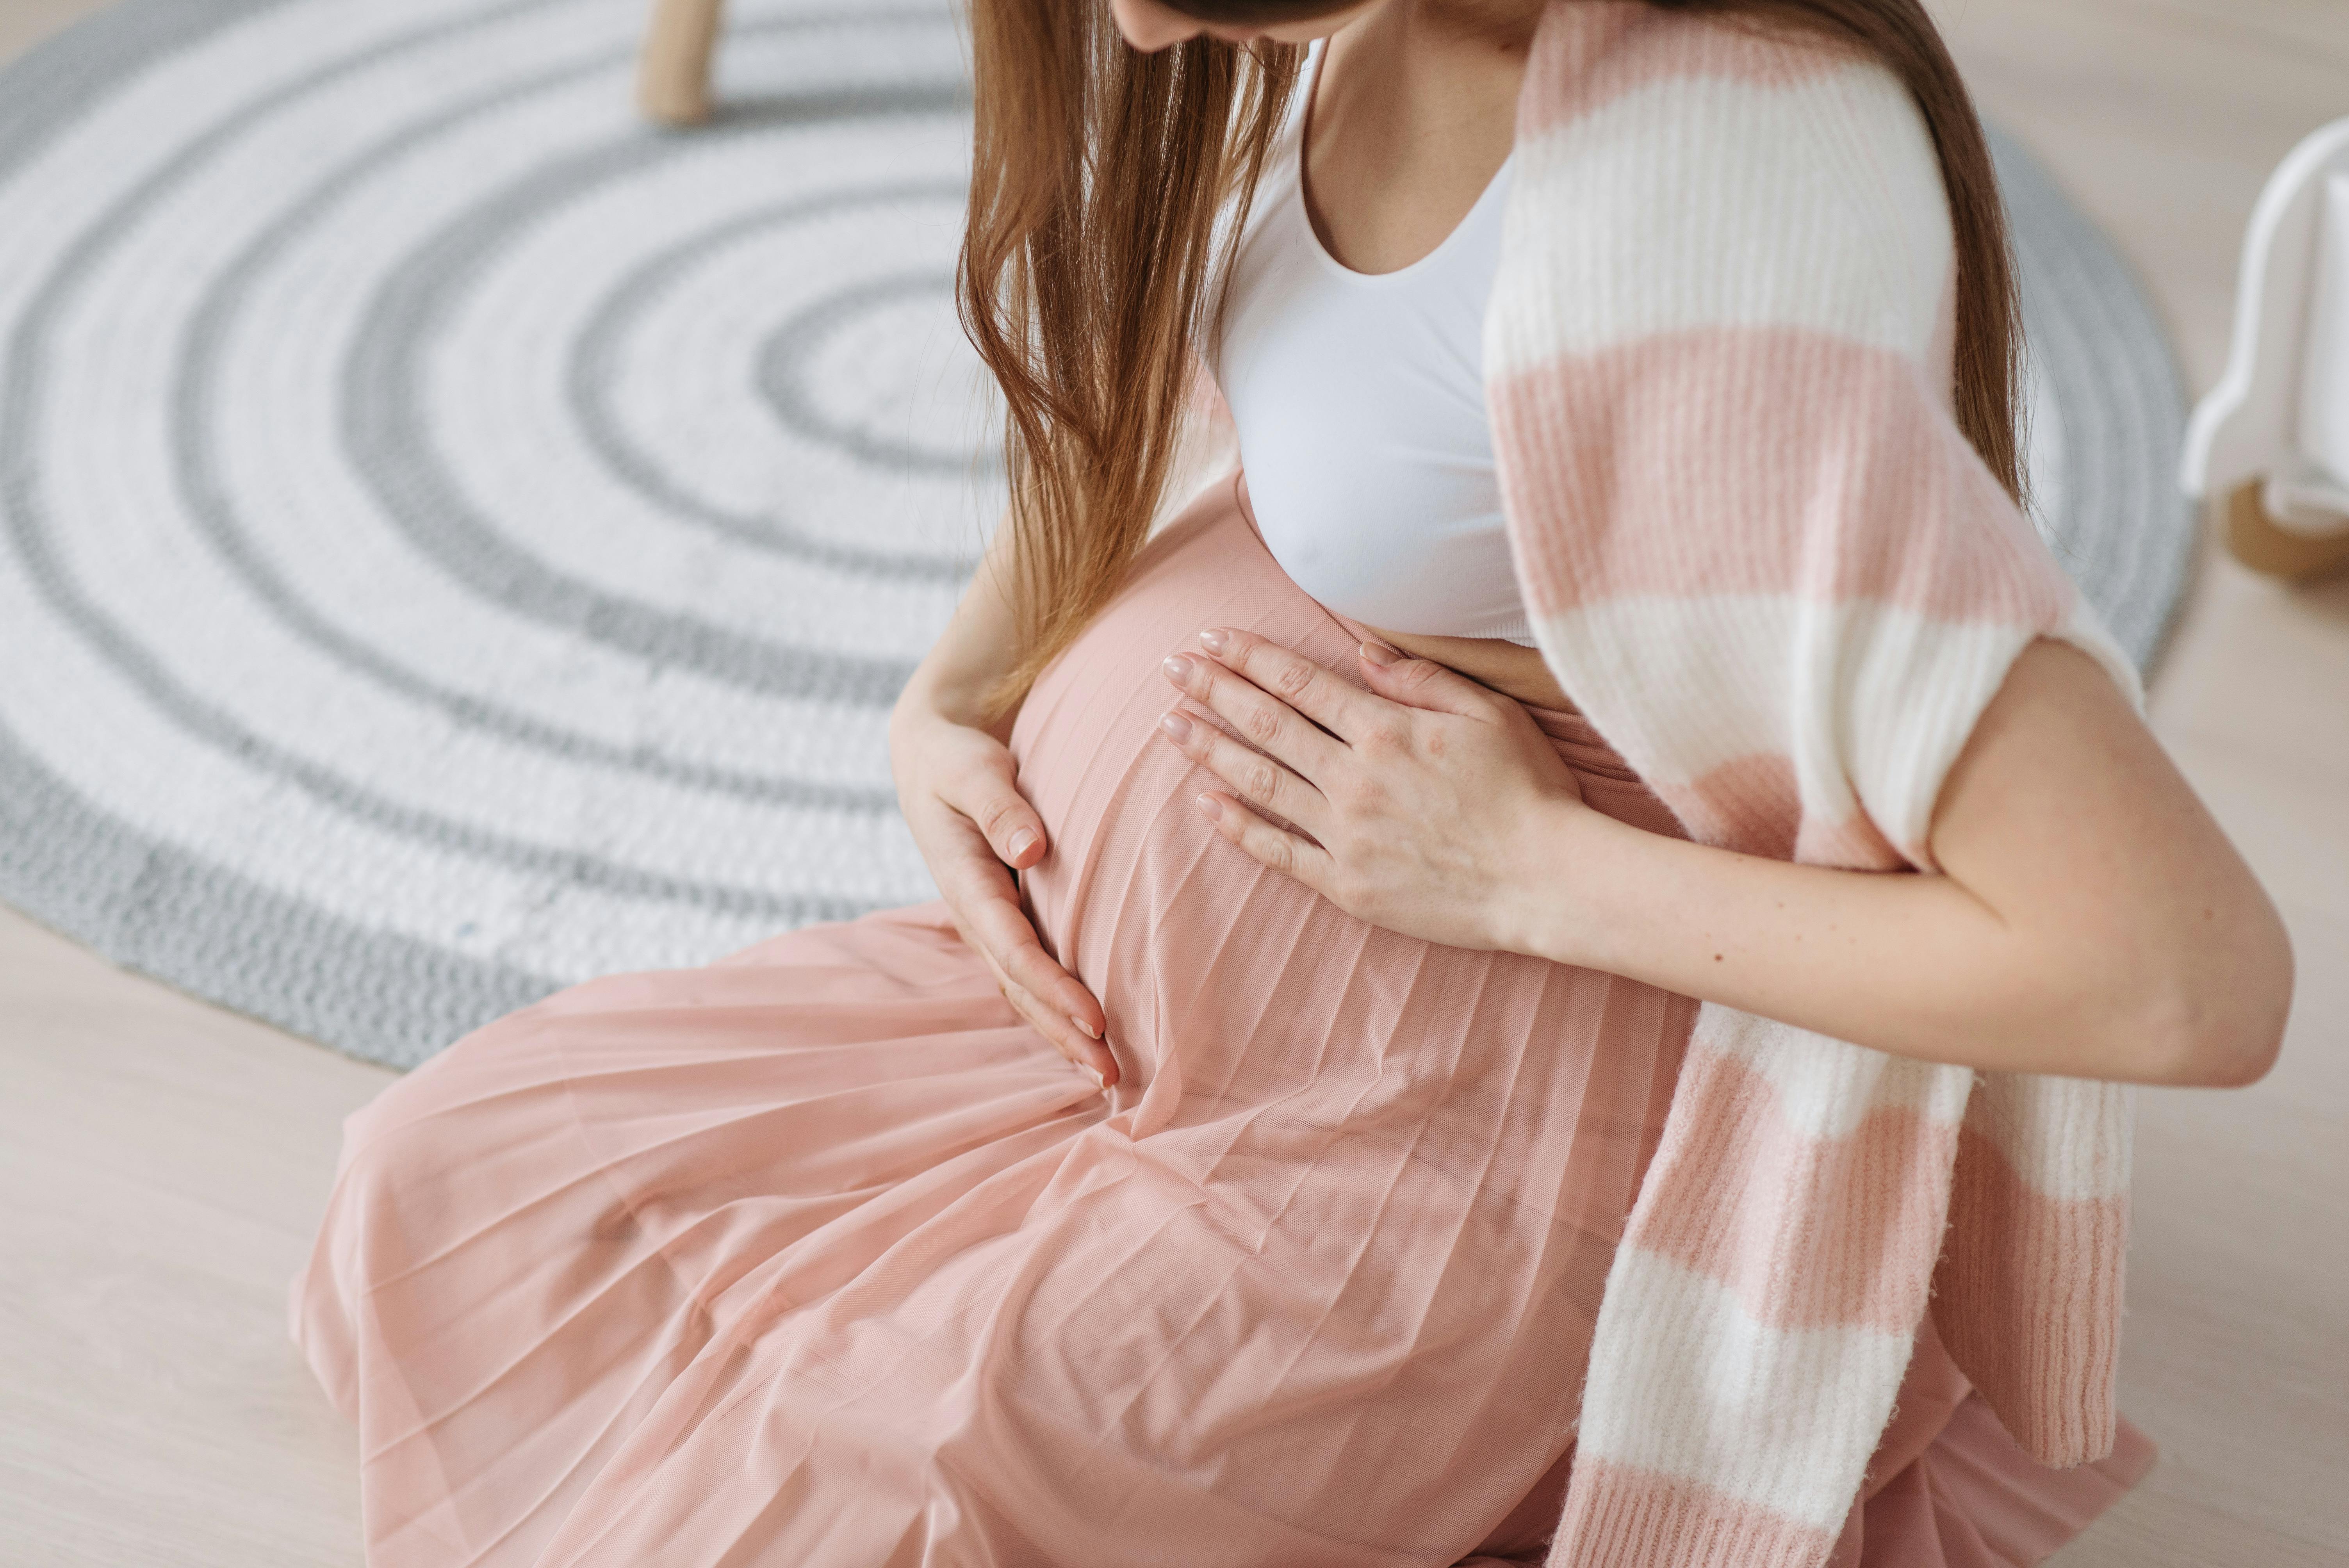 Une femme enceinte se tenant le ventre en position assise | Source : Pexels